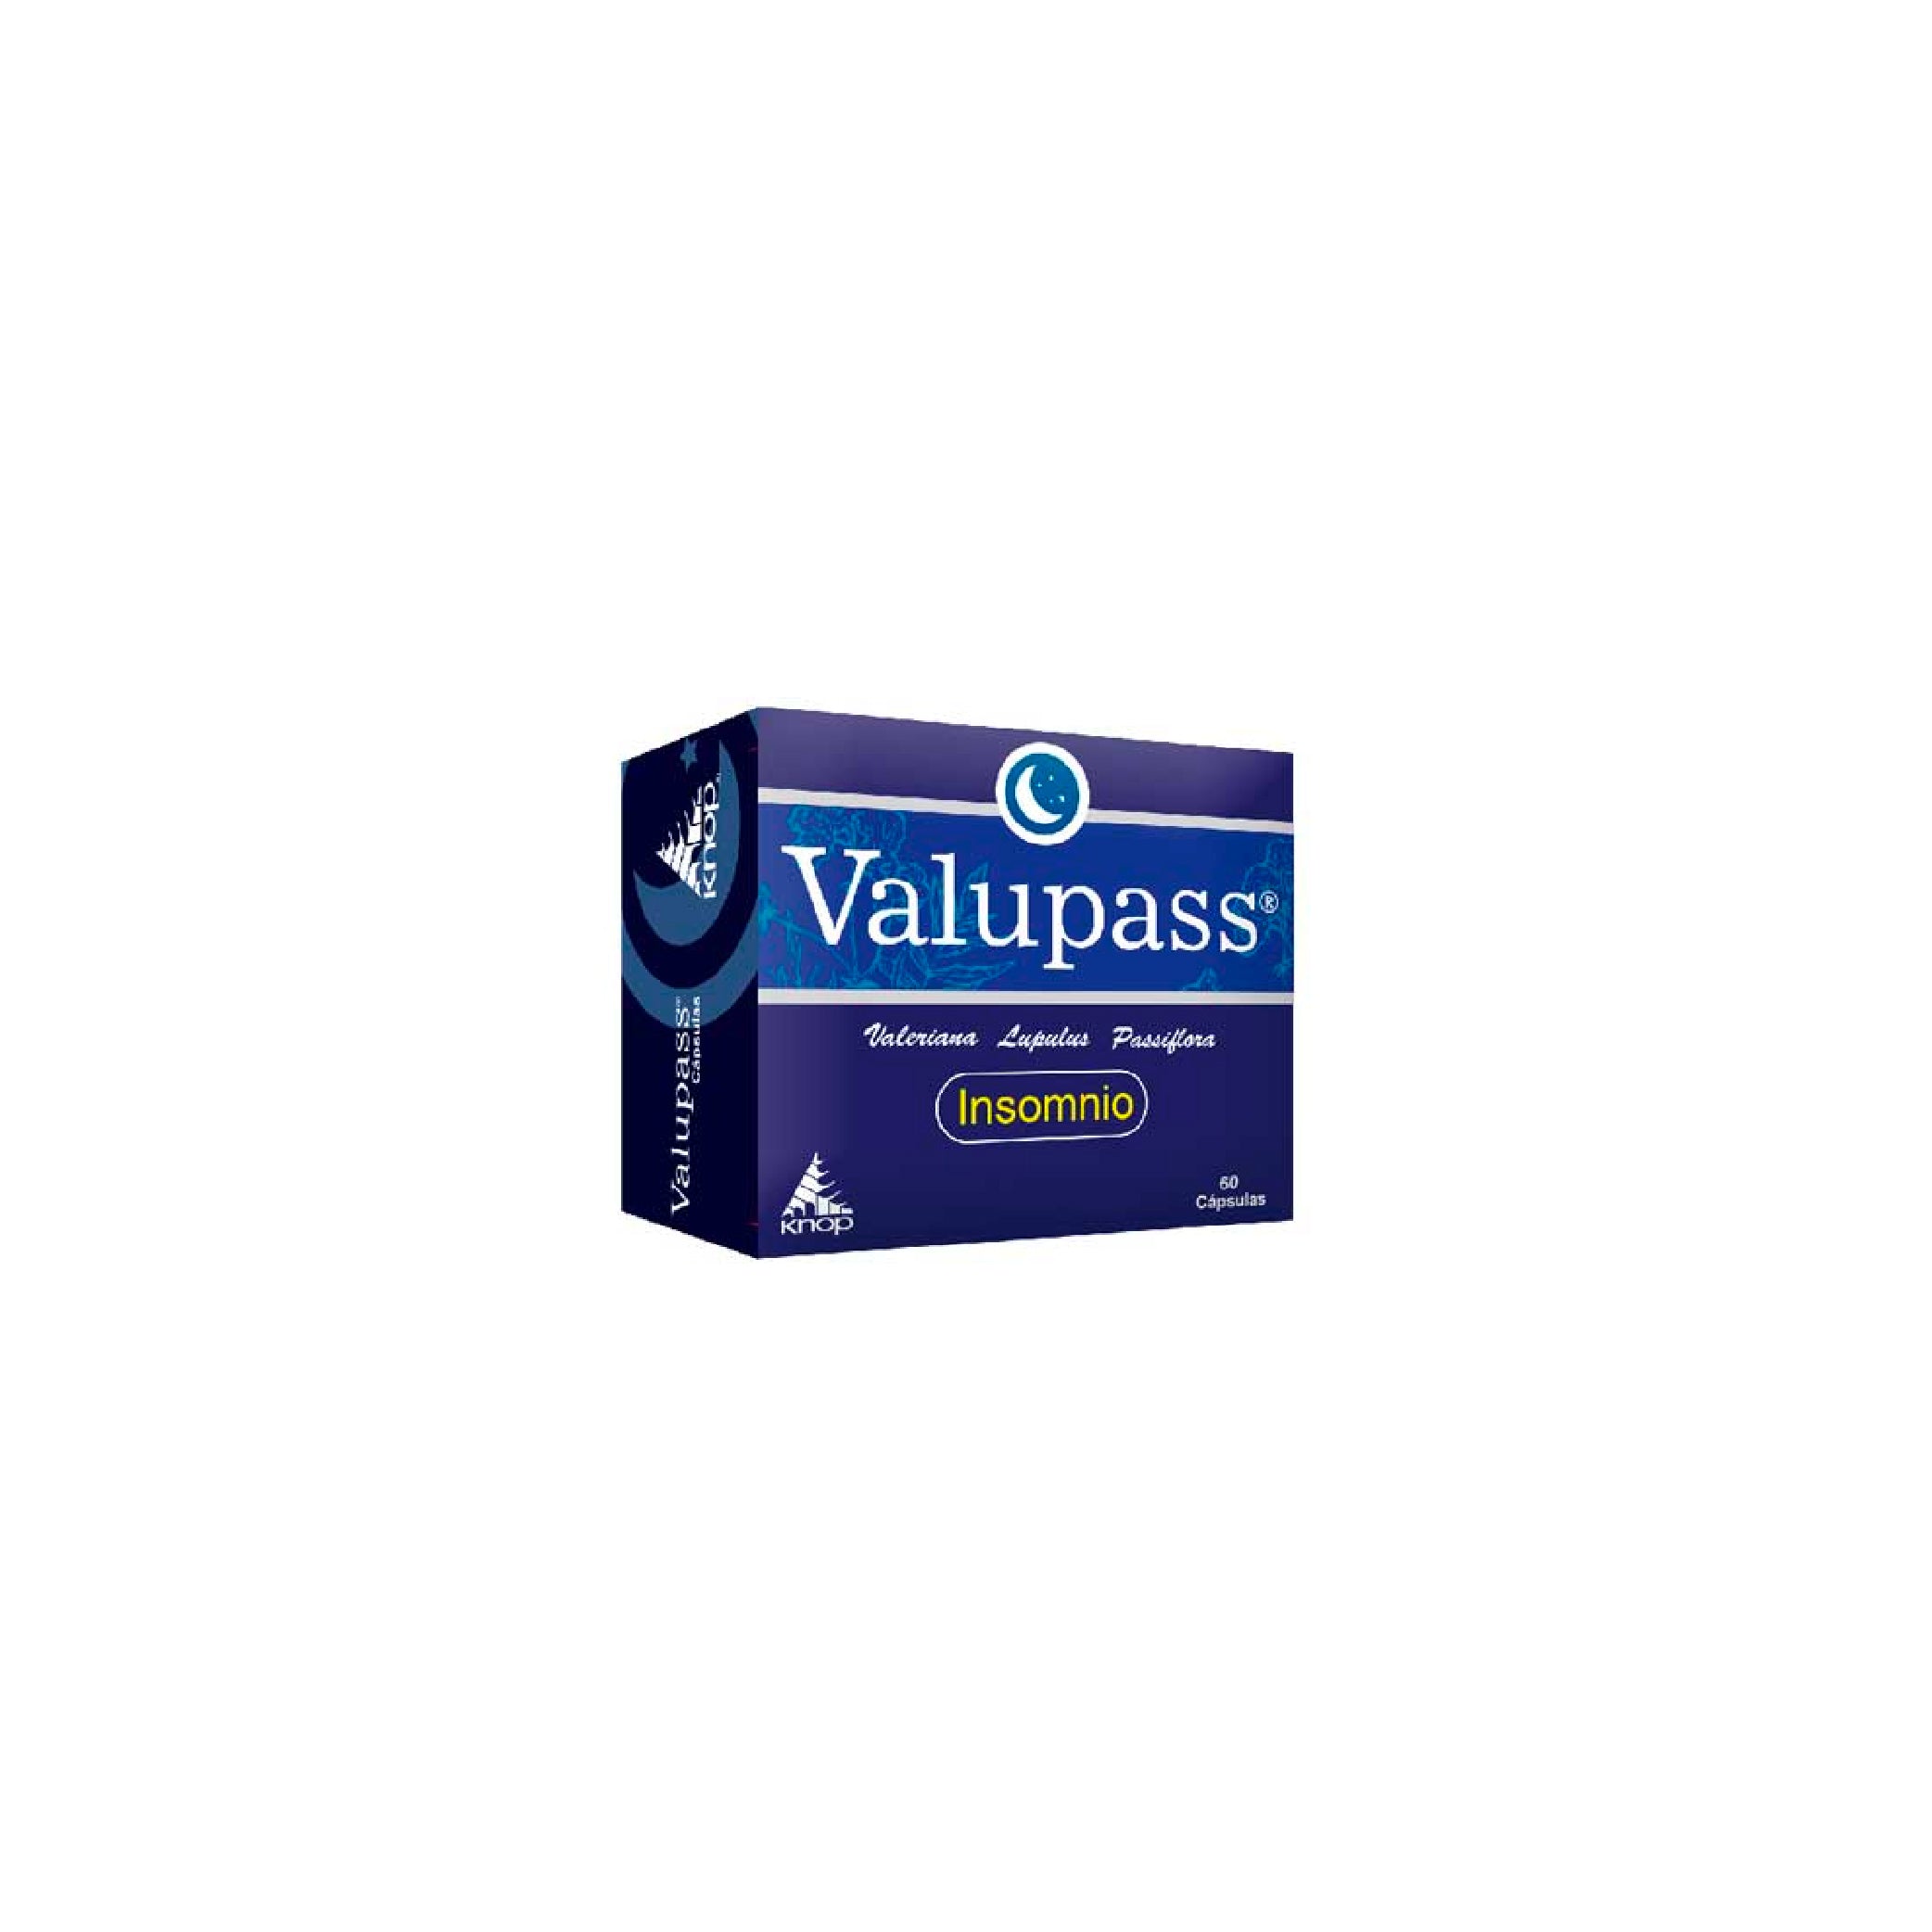 VALUPASS Caps. x 60